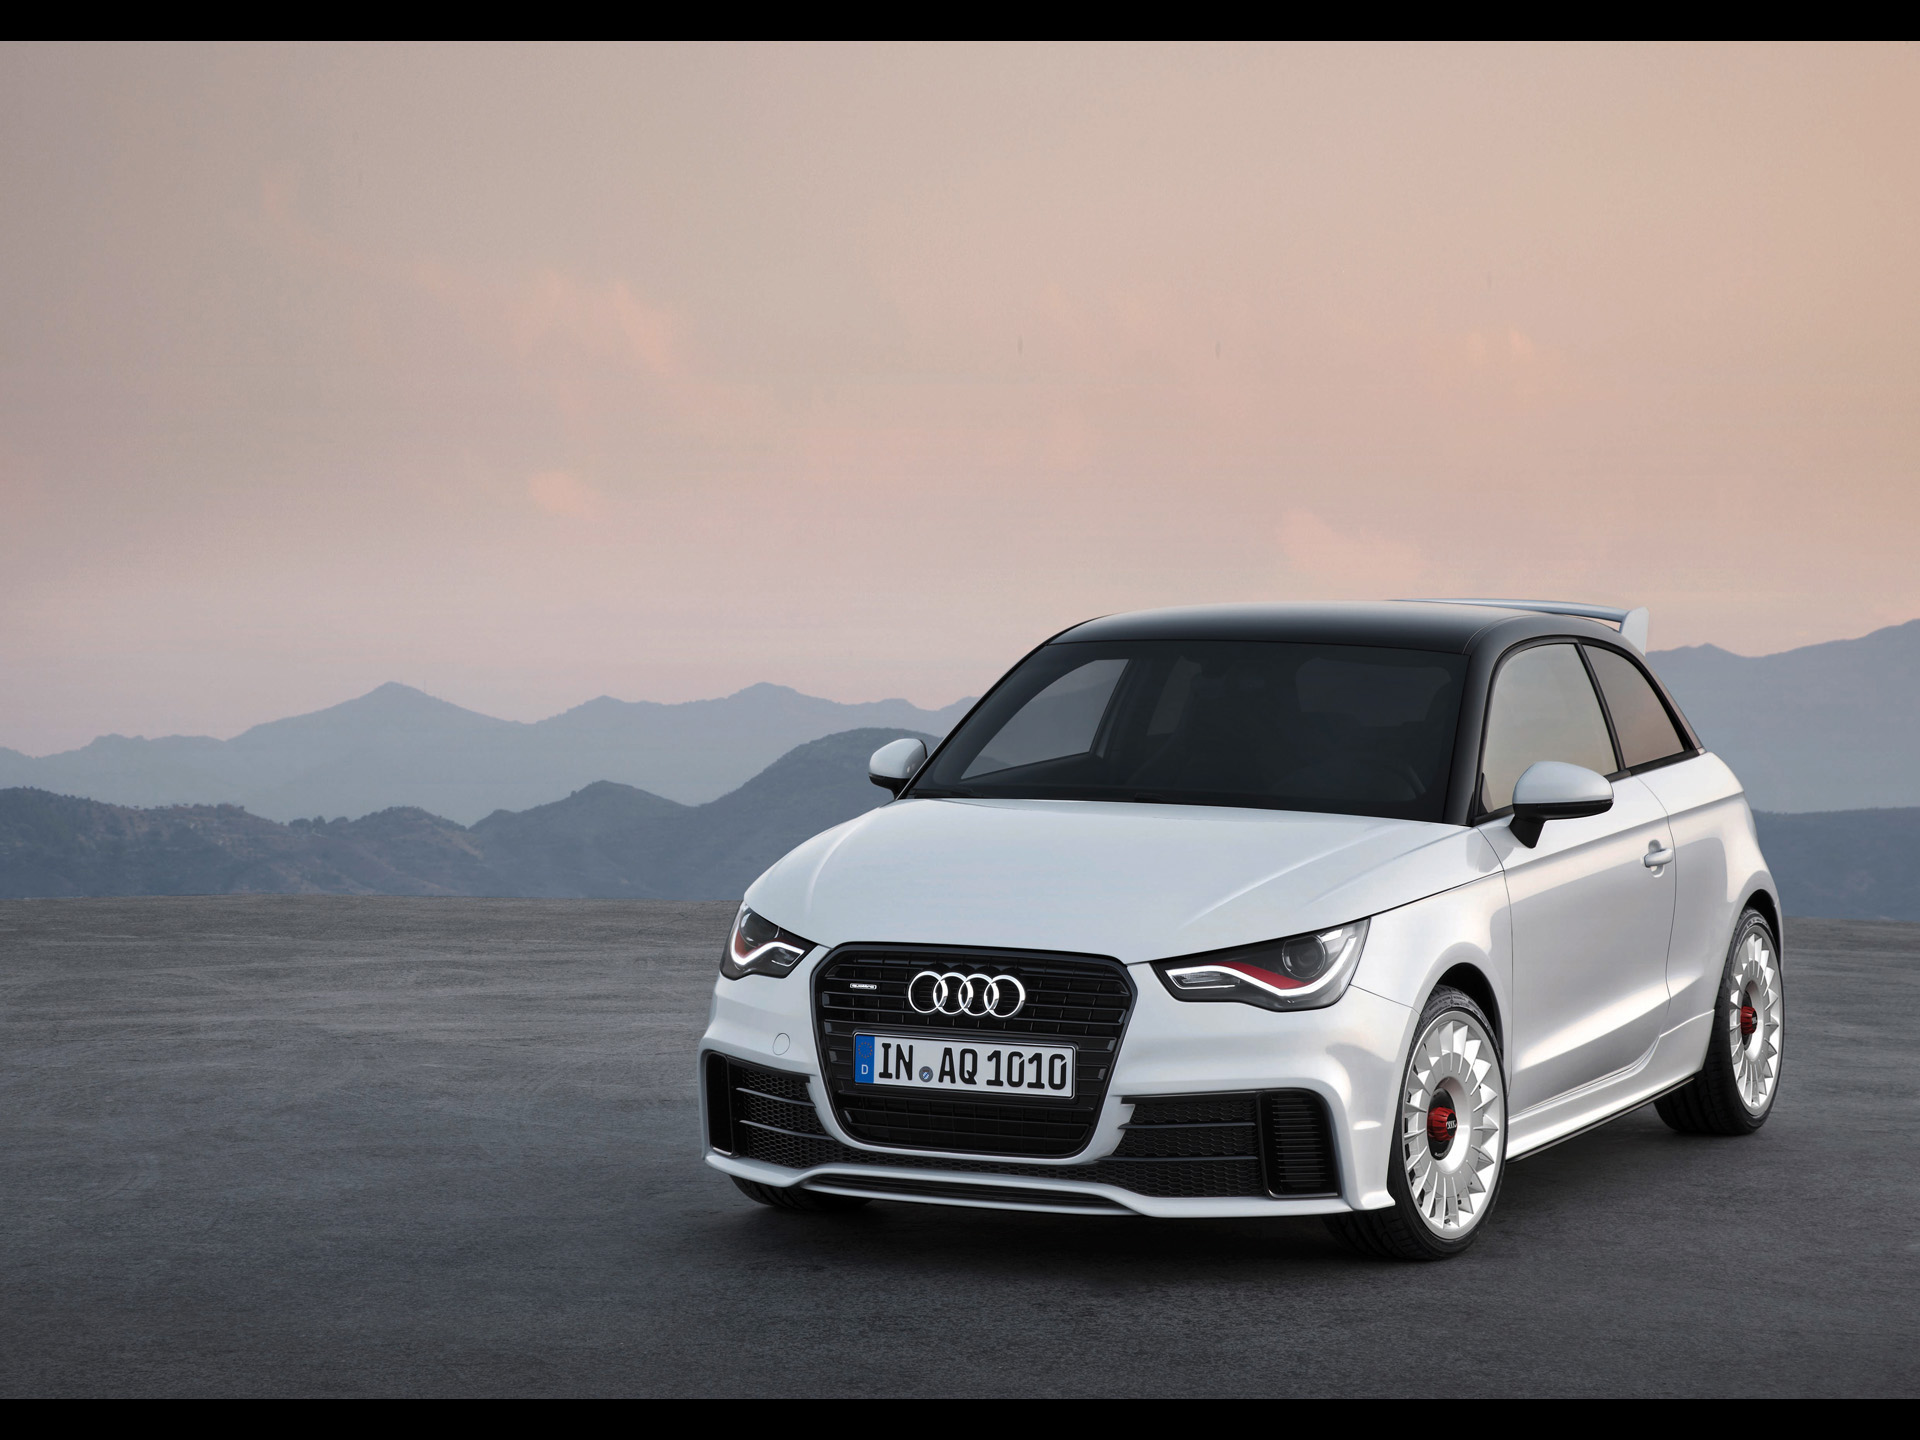 Fonds d'écran Audi A1 : tous les wallpapers Audi A1